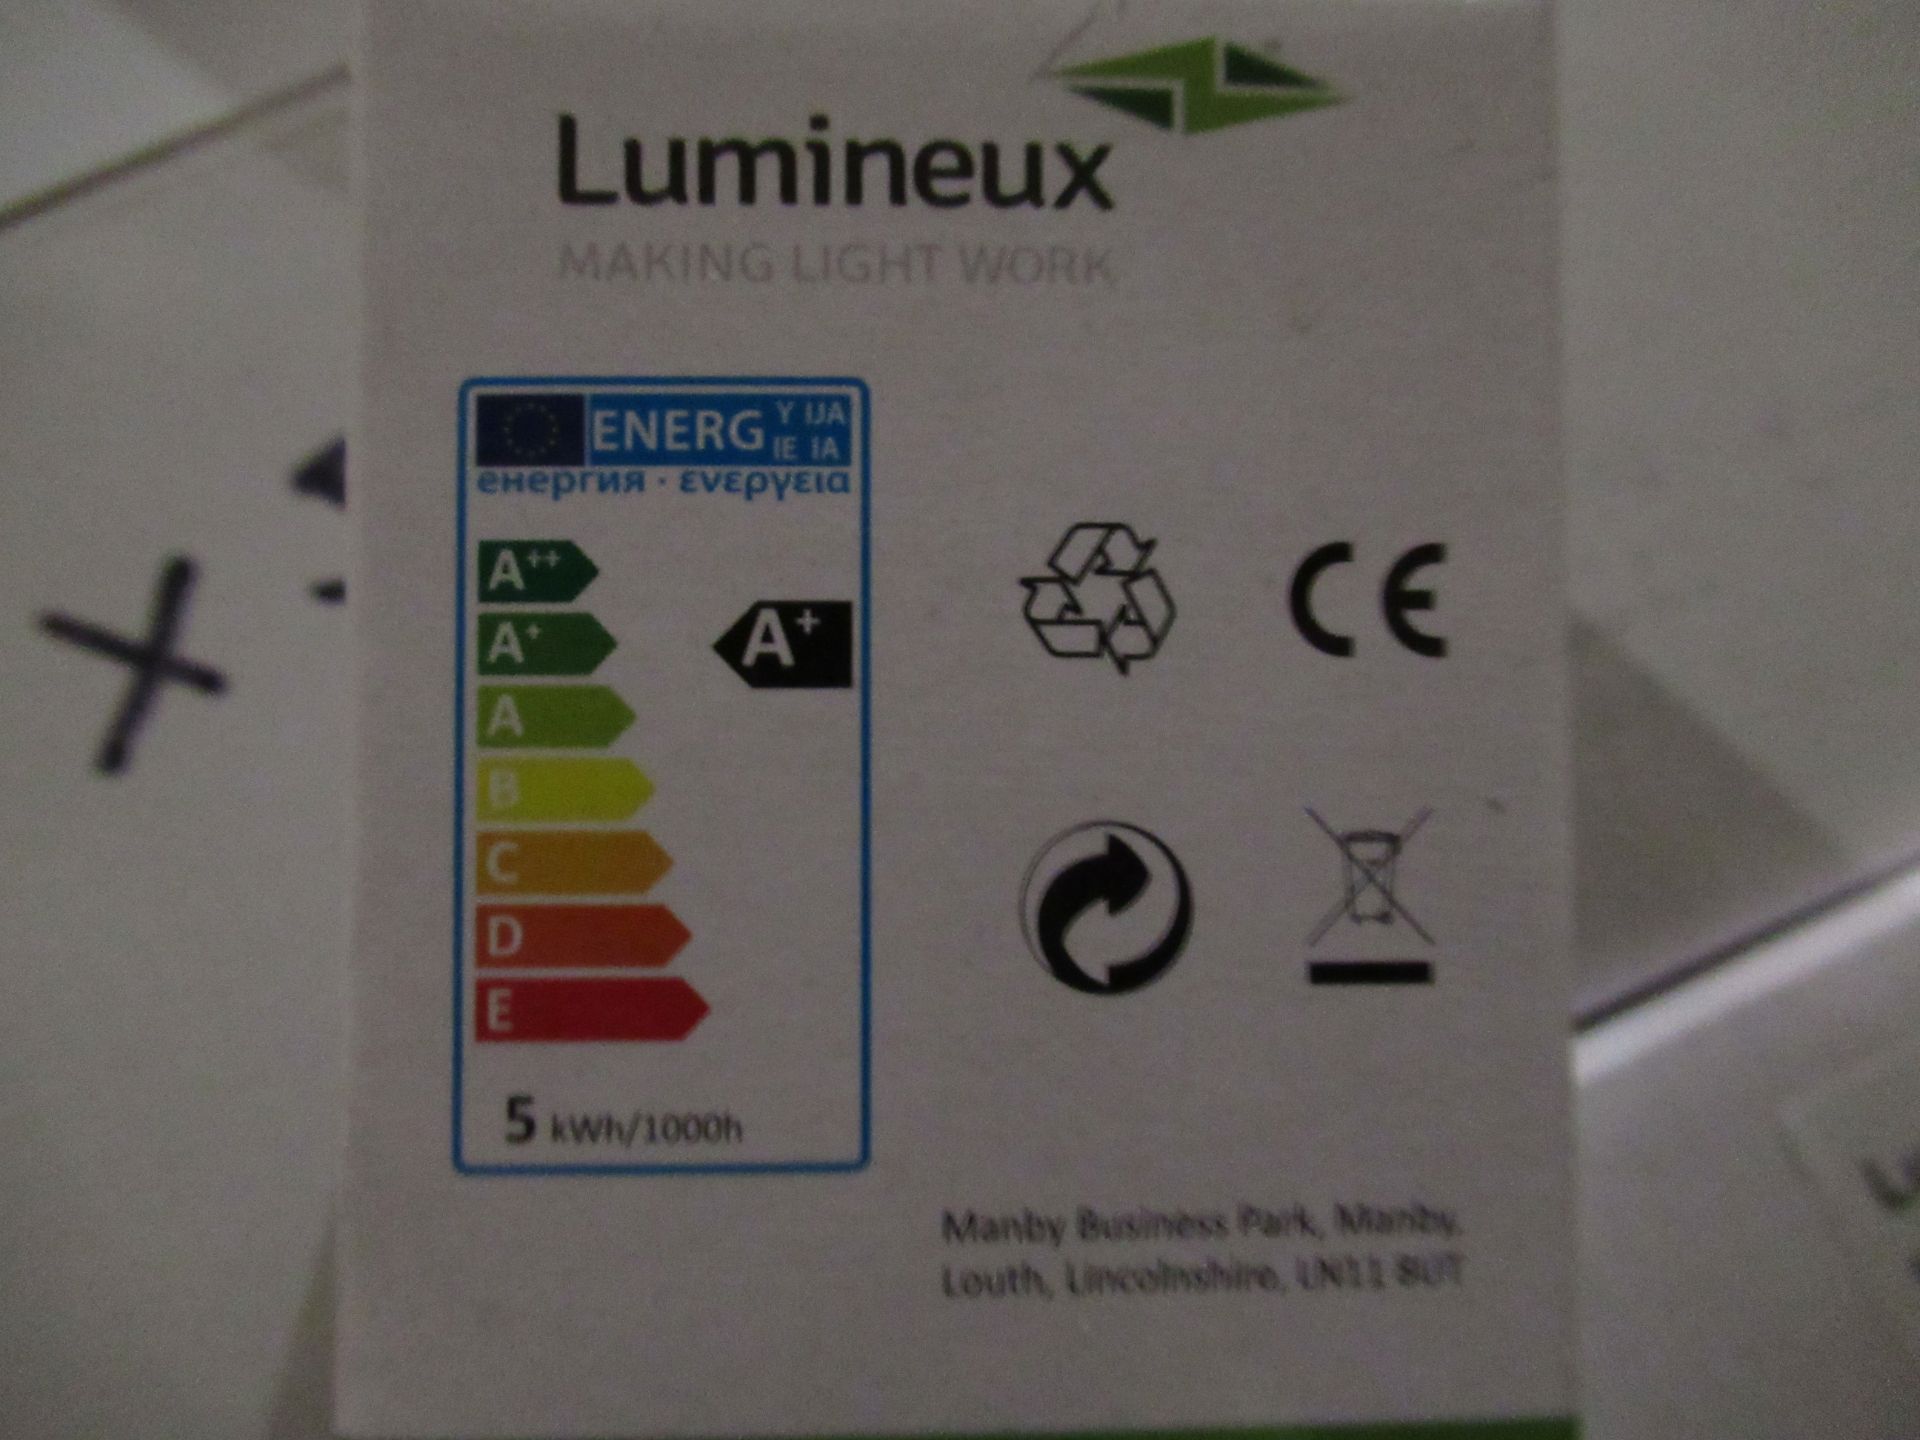 10 x 10 Lumineux LED GU10 SMD Plus 5W 3000K - Image 4 of 4